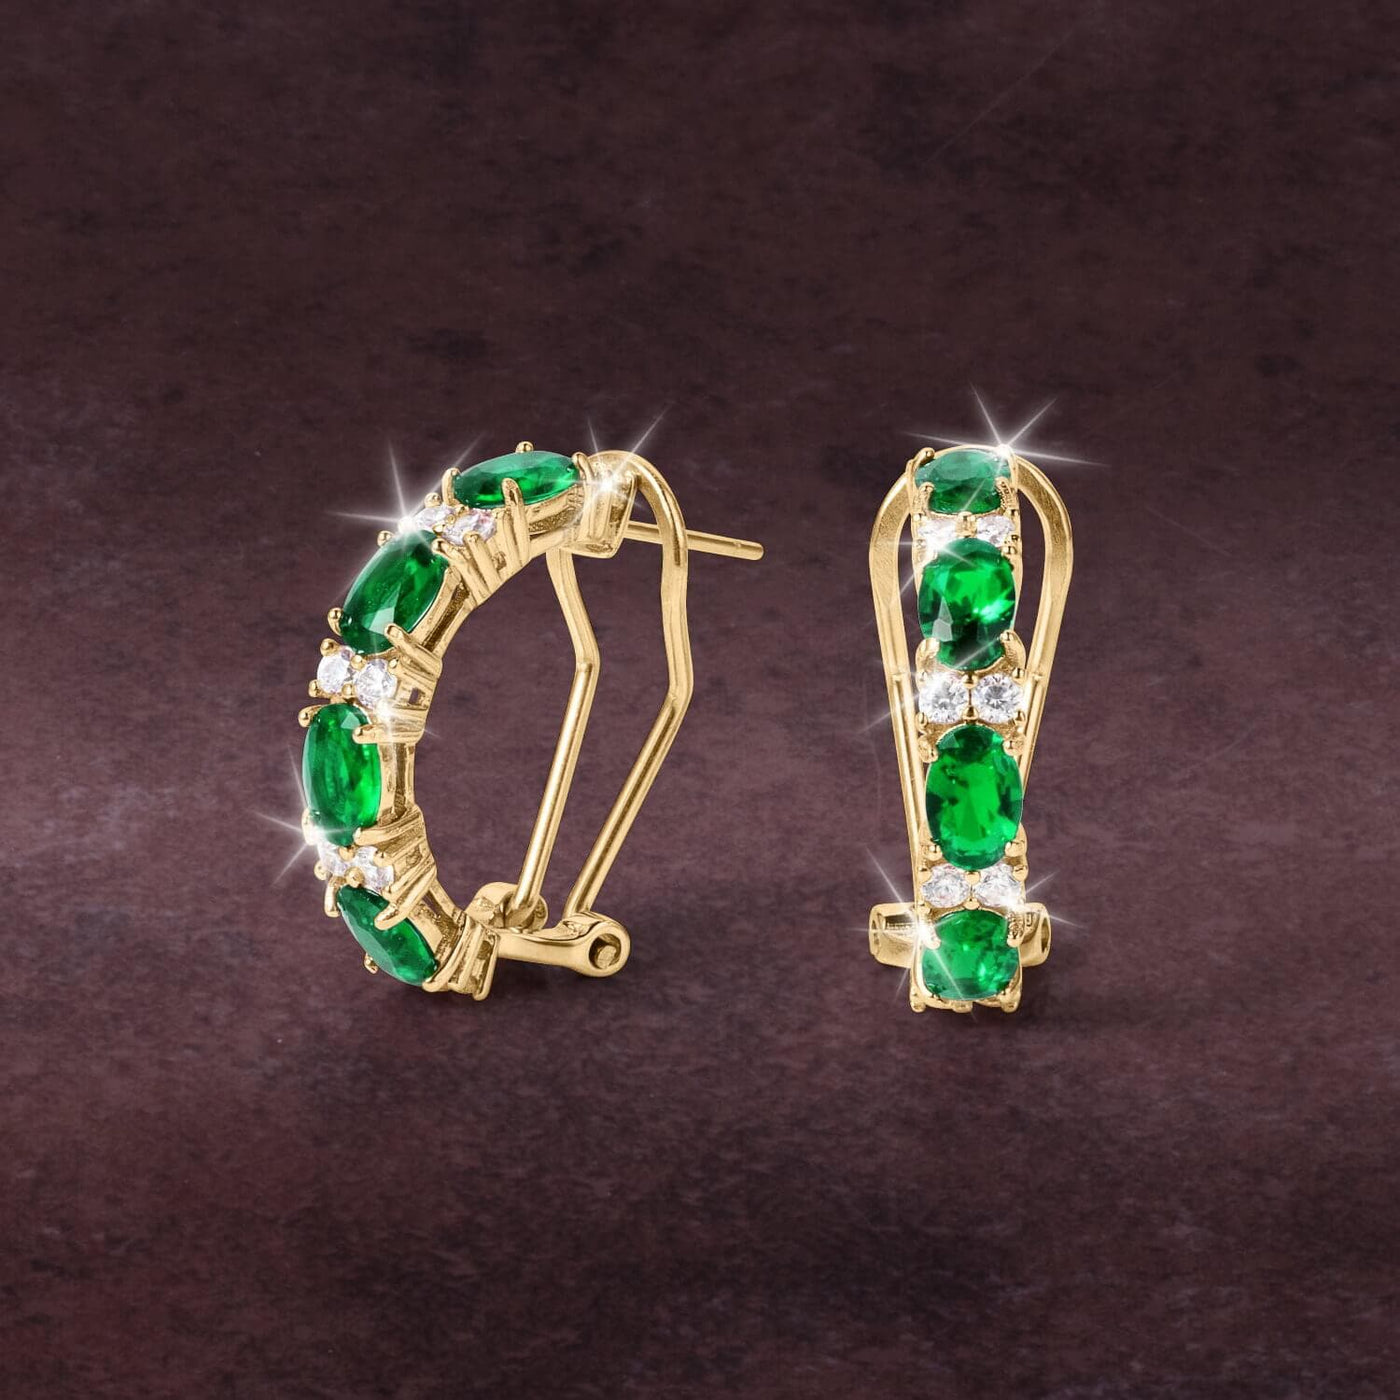 Daniel Steiger Desire Evergreen Earrings